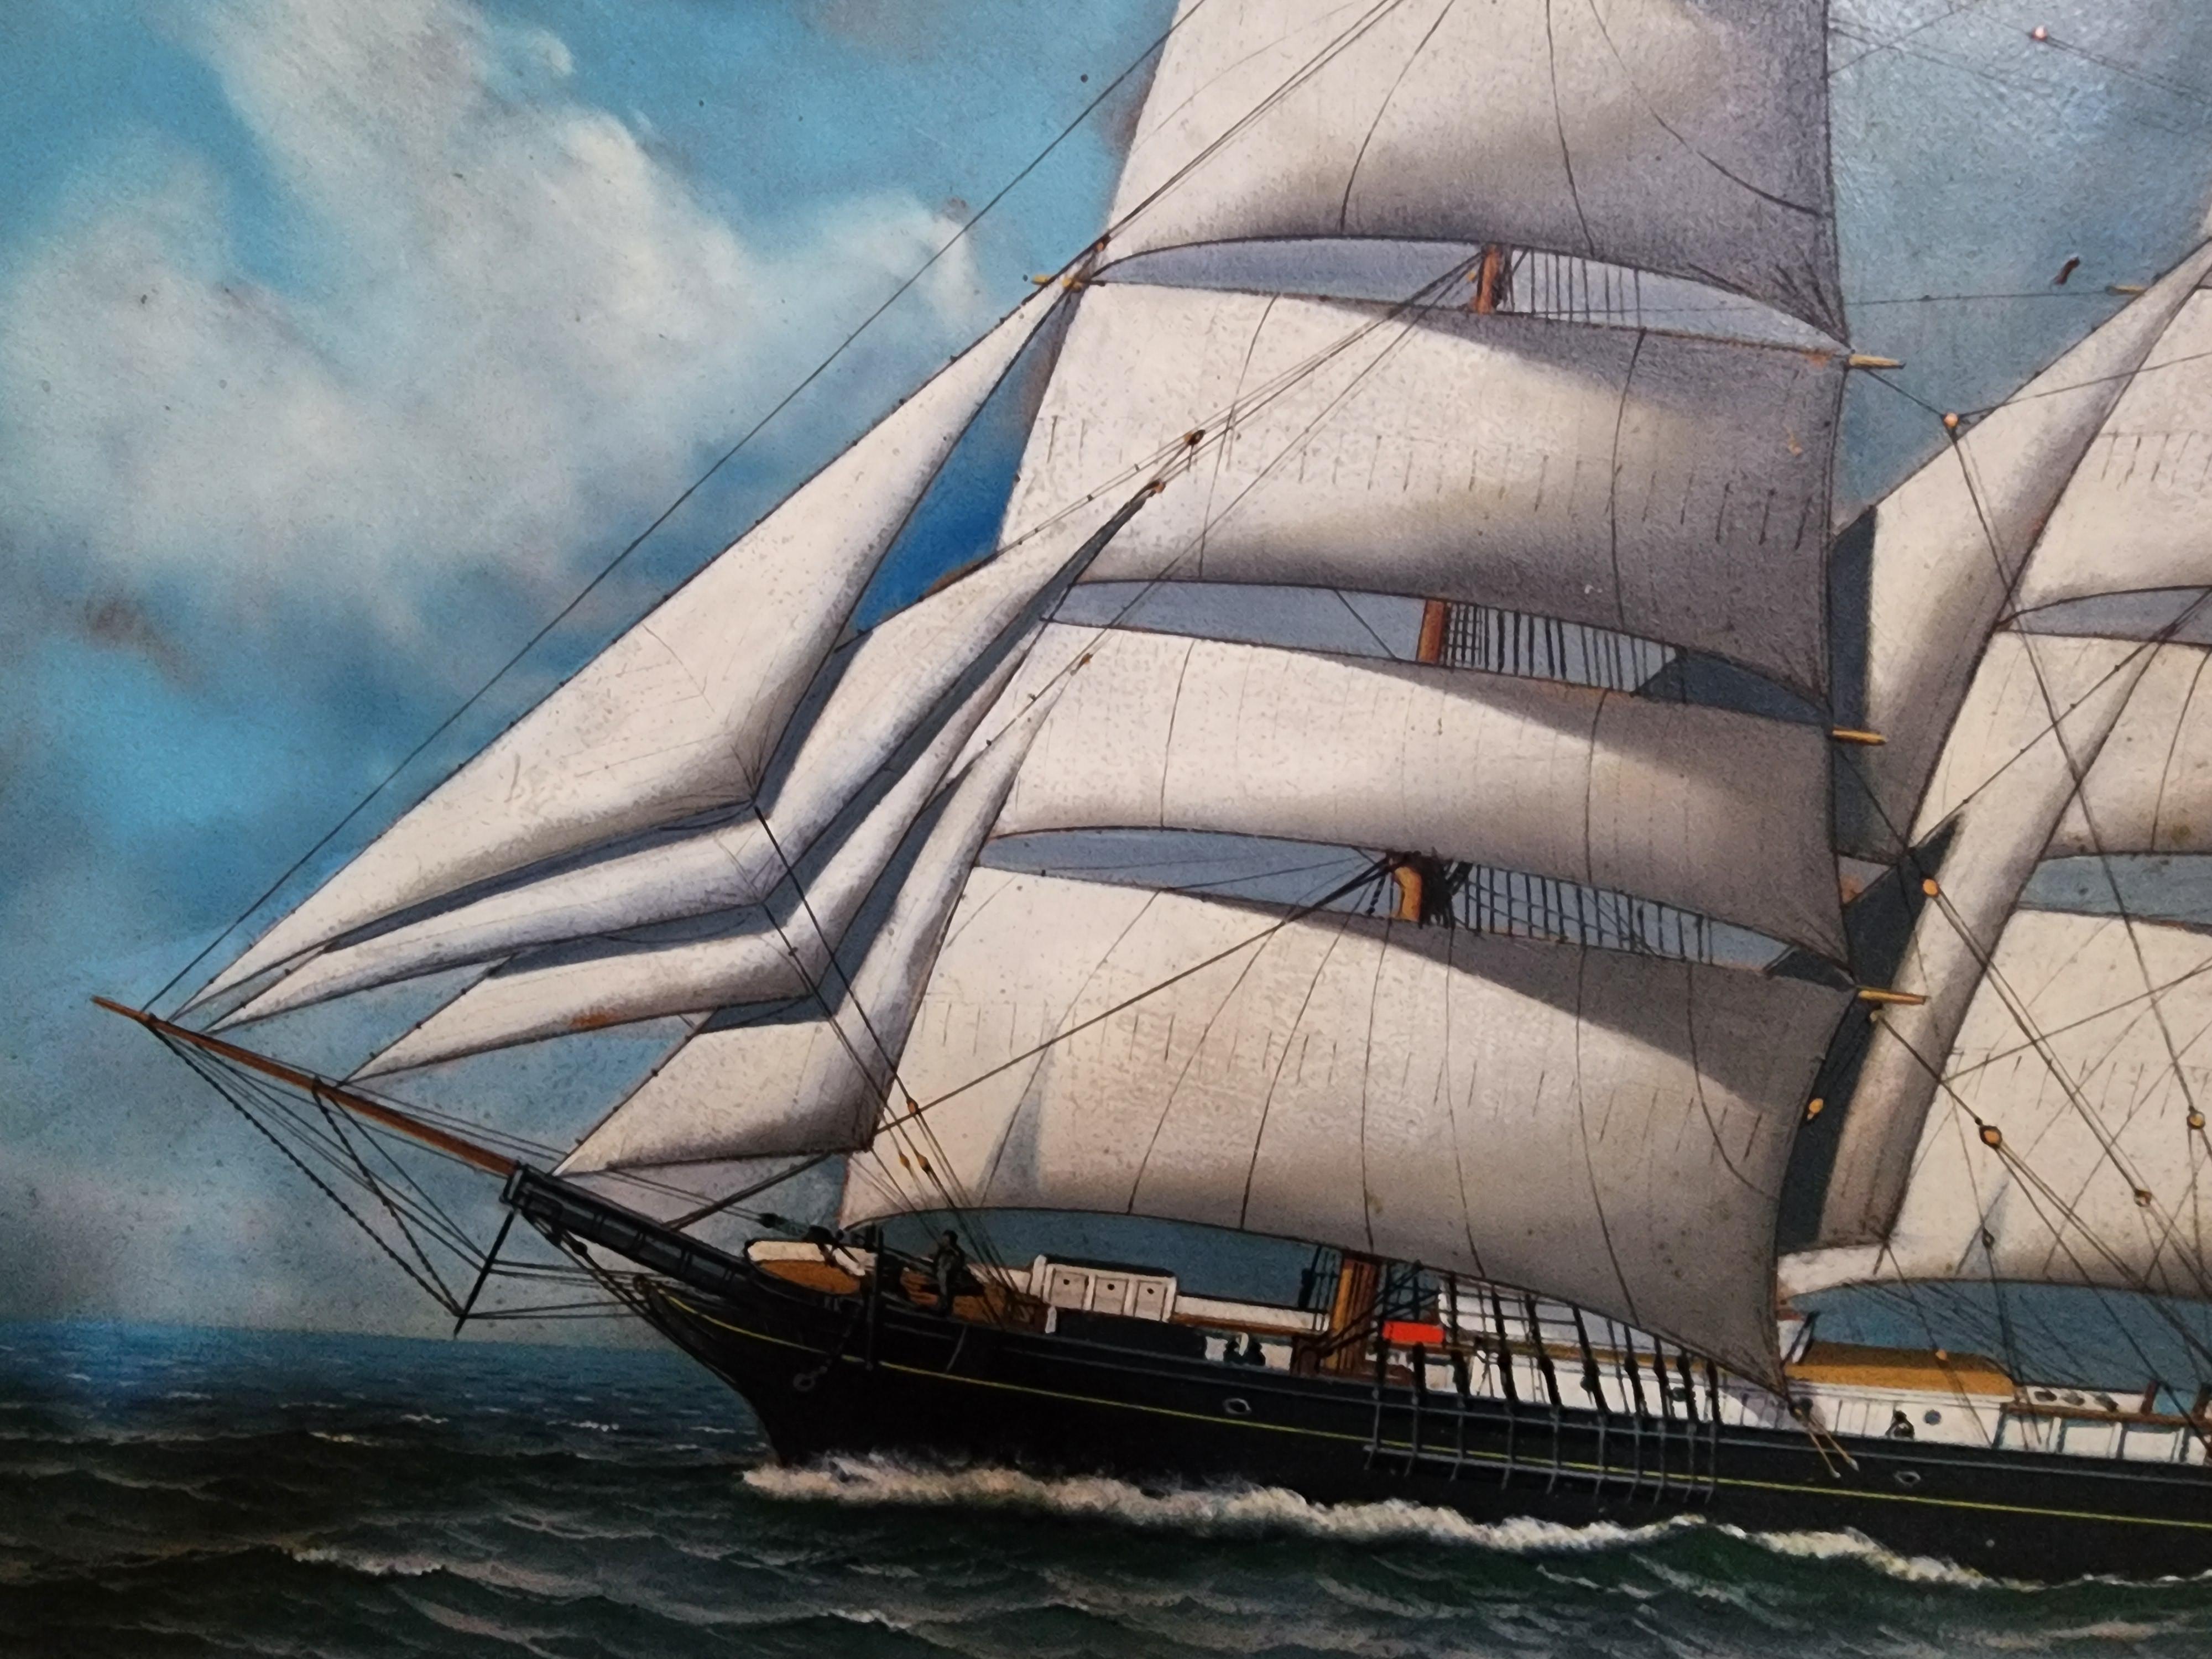 Das Schiff William Volckens von dem Marinemaler Antonio Jacobsen.
Signiert und datiert unten rechts 